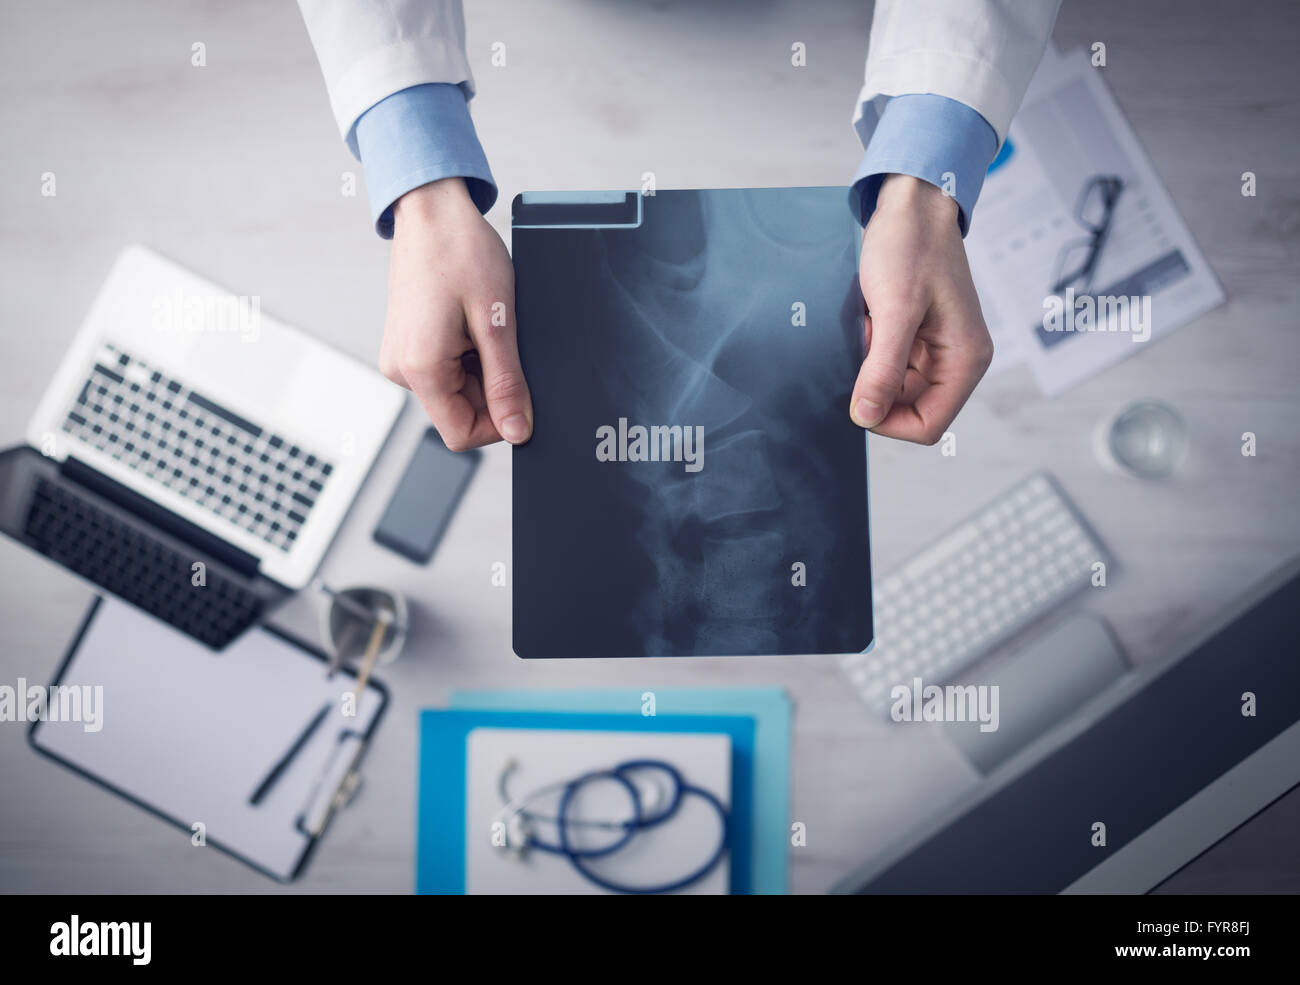 Radiologo cheching un'immagine a raggi x della colonna vertebrale umana, mani close up con desktop sullo sfondo, vista dall'alto Foto Stock